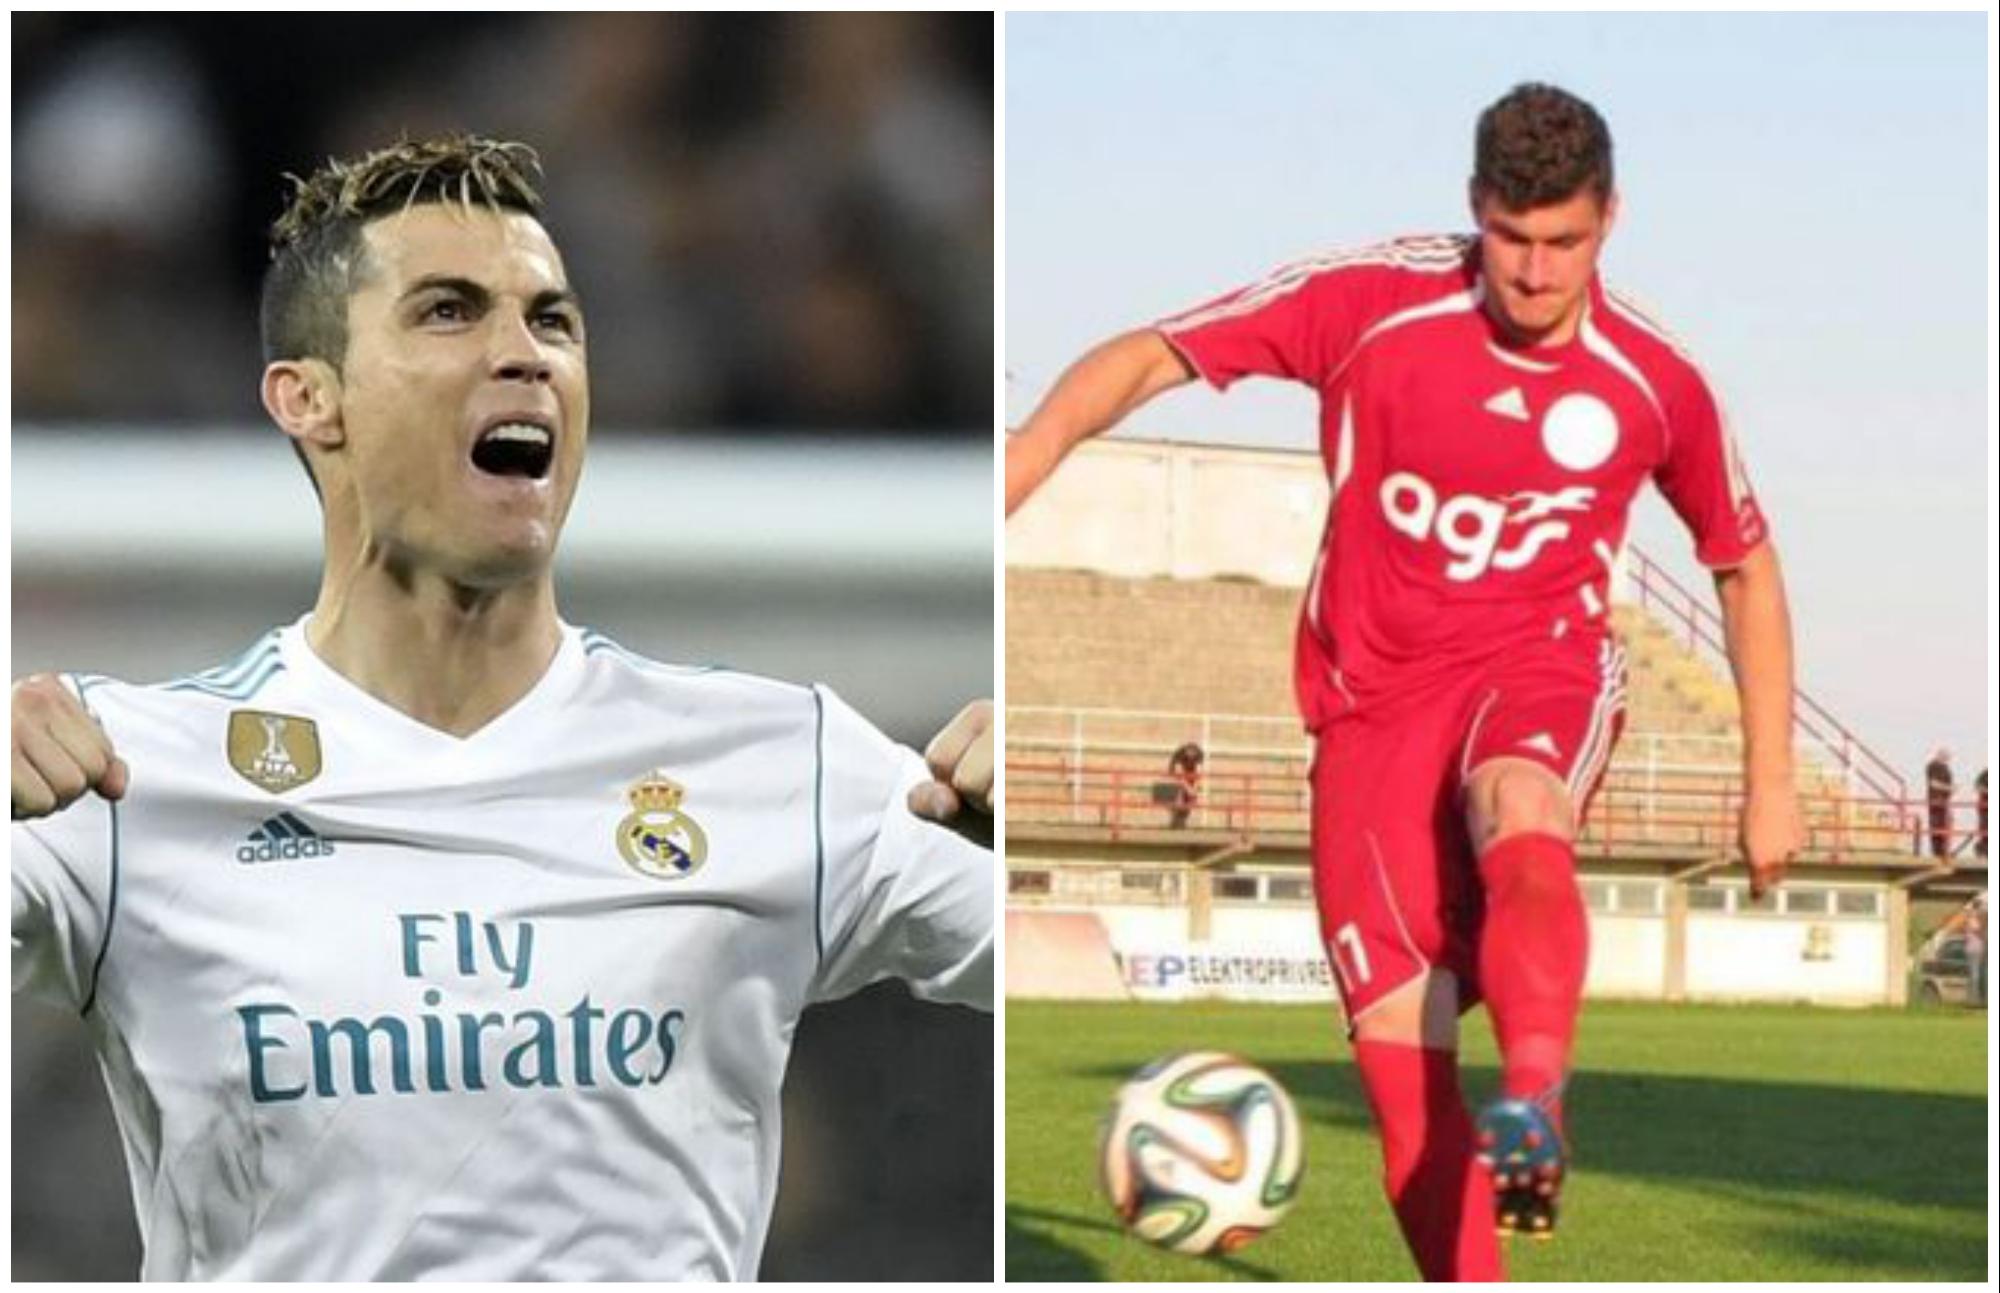 O Ronaldovom golu priča cijela planeta, a mi vas pitamo: Je li Antonio iz Orašja postigao bolji?